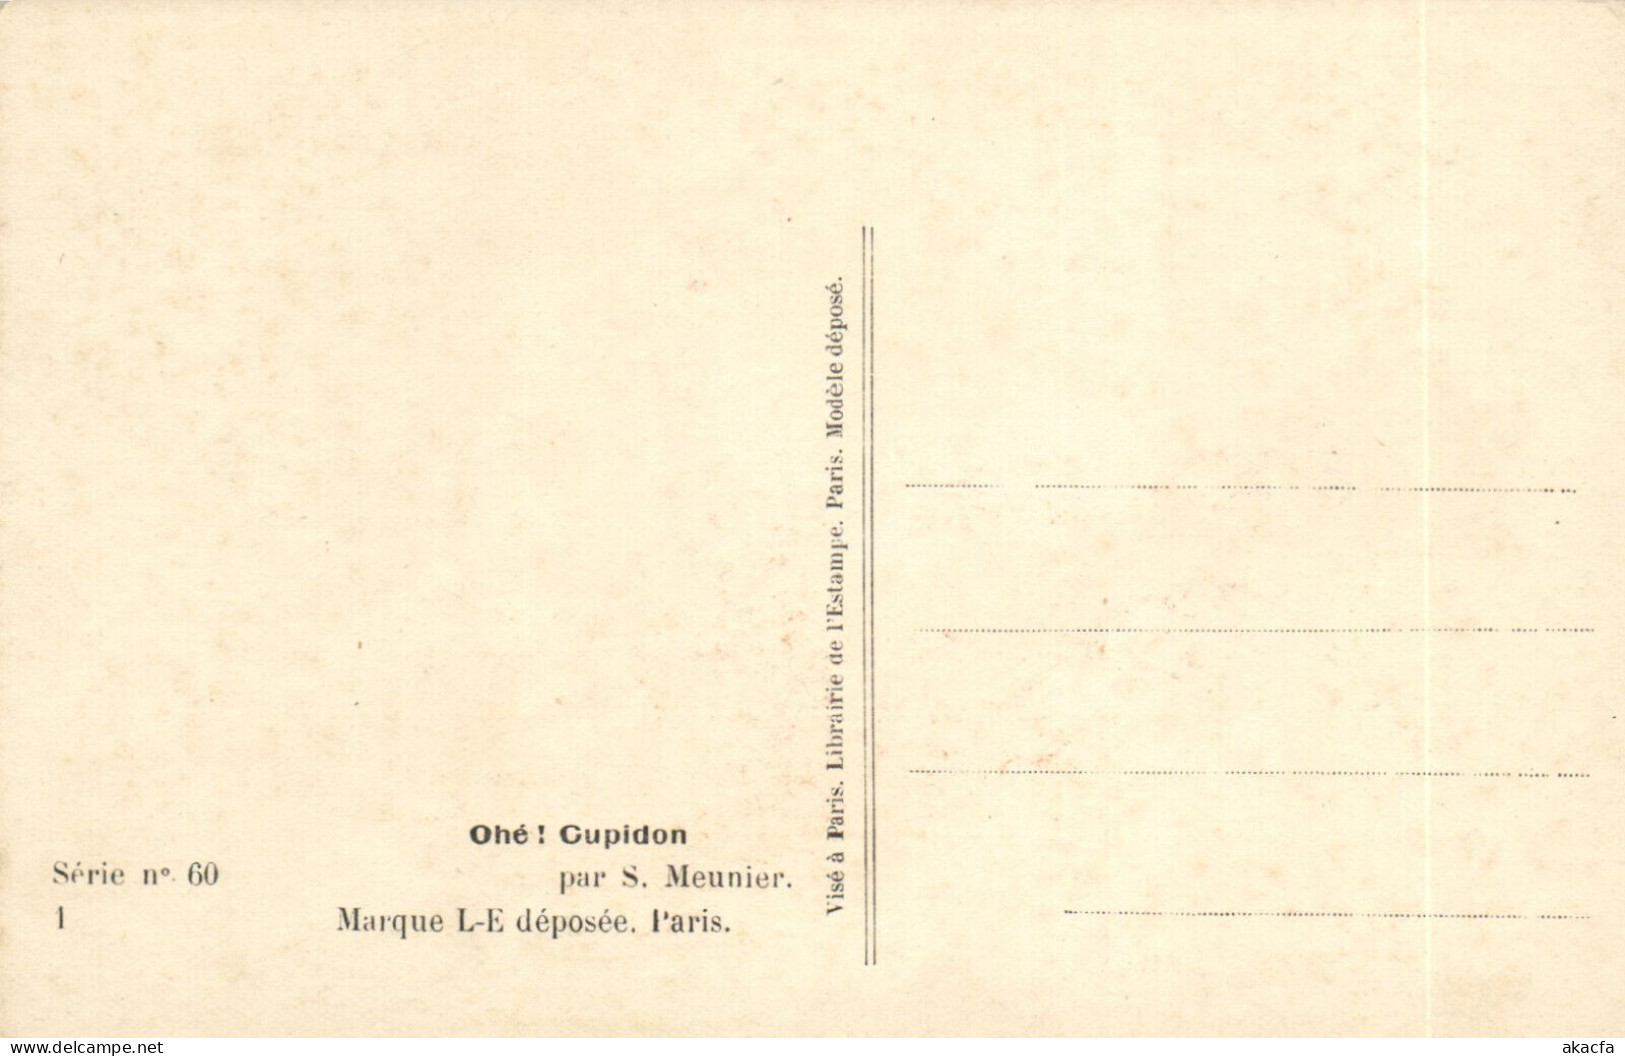 PC ARTIST SIGNED, MEUNIER, RISQUE, OHÉ! CUPIDON, Vintage Postcard (b50663) - Meunier, S.